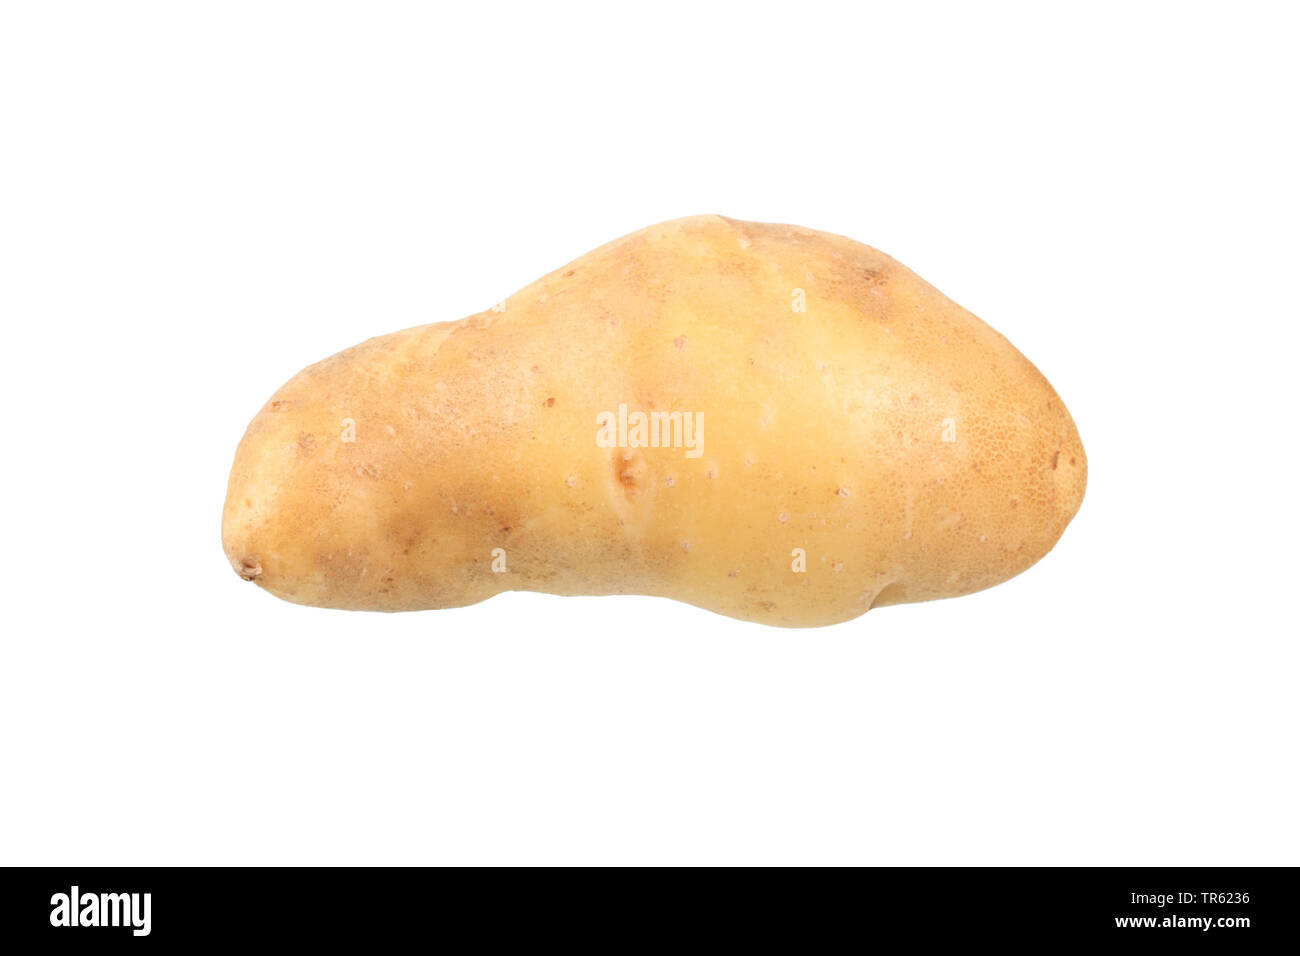 potato (Solanum tuberosum La Ratte d'Ardeche), potato of cultivar La Ratte d'Ardeche, cutout Stock Photo